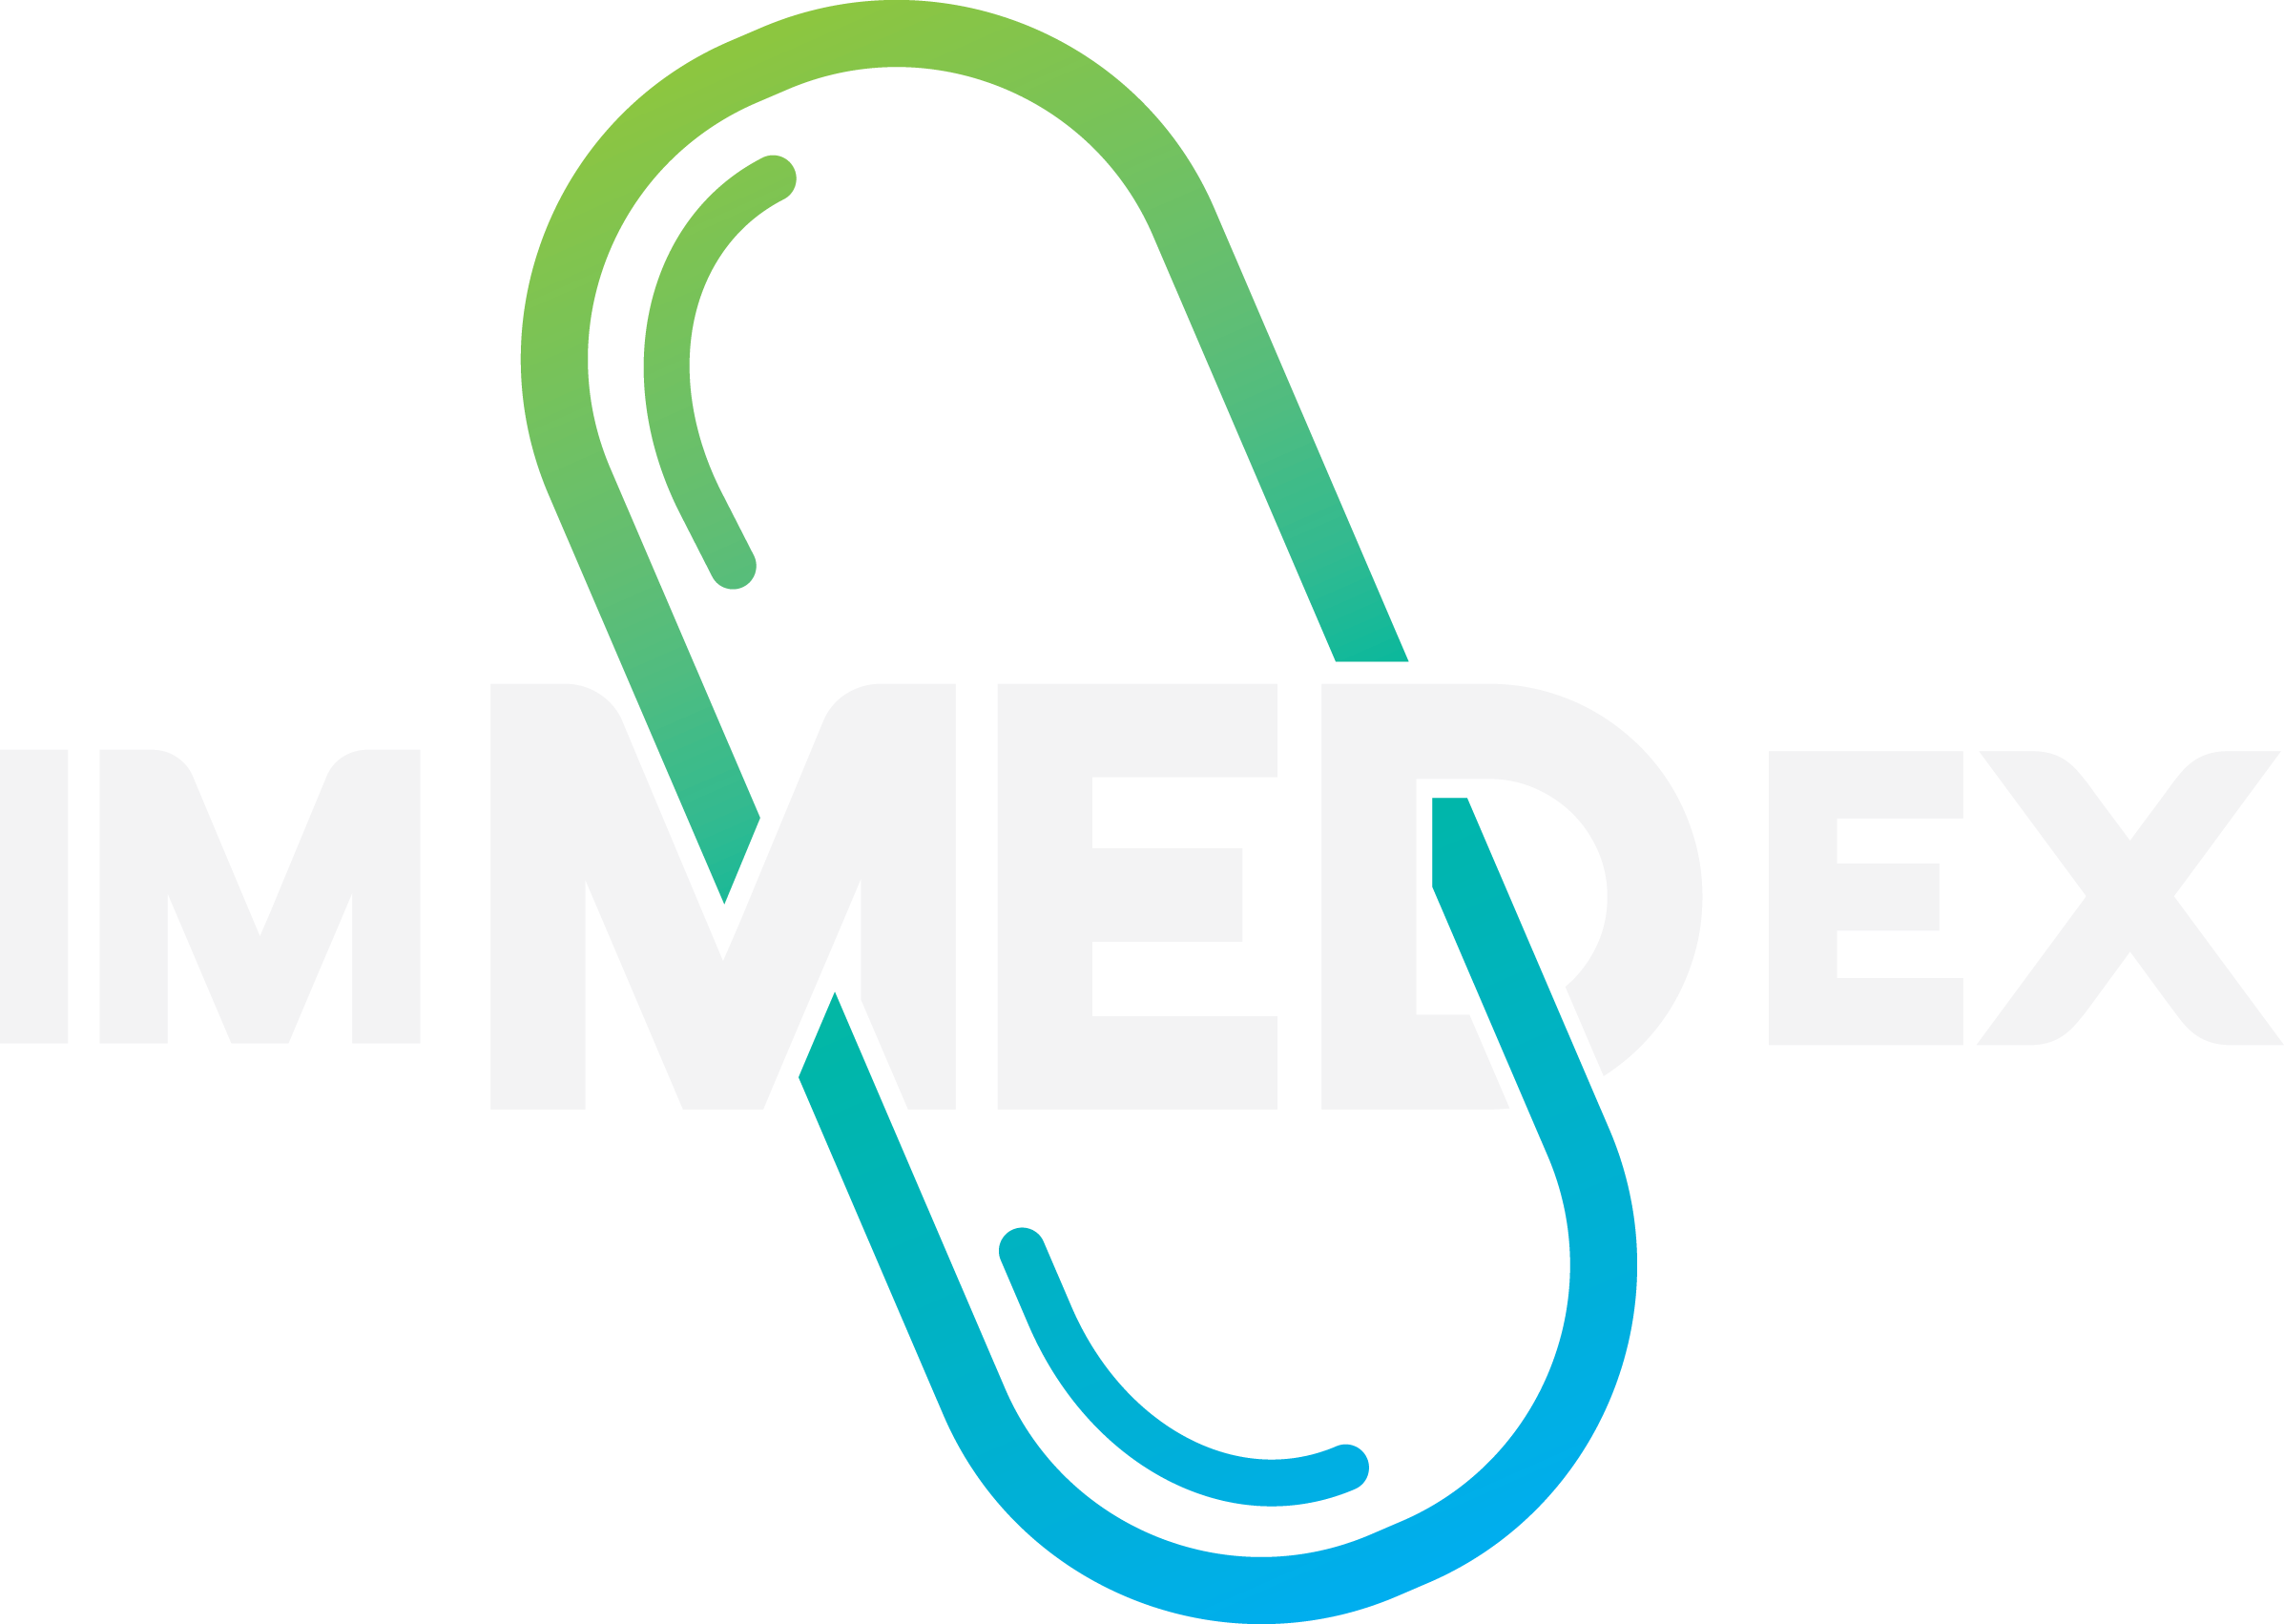 ImMEDex